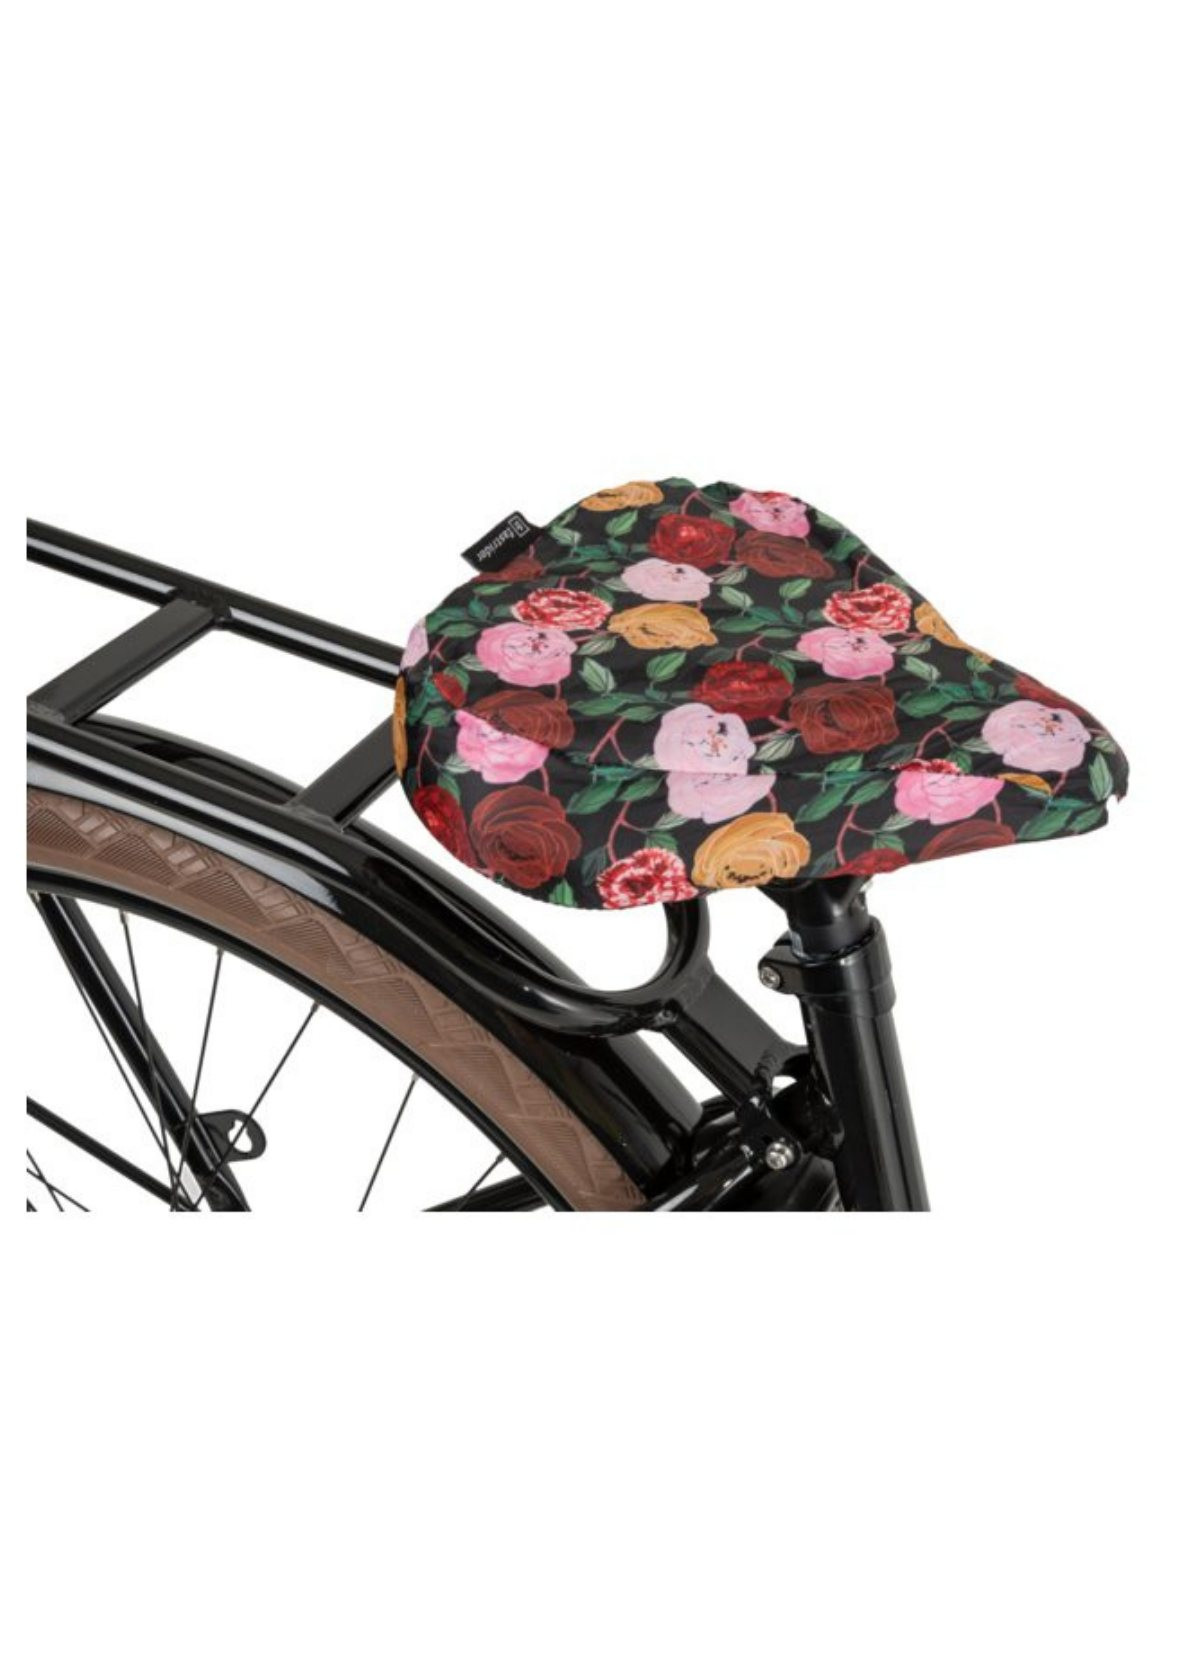 Le couvre selle vélo d'Anabelle : original et imperméable